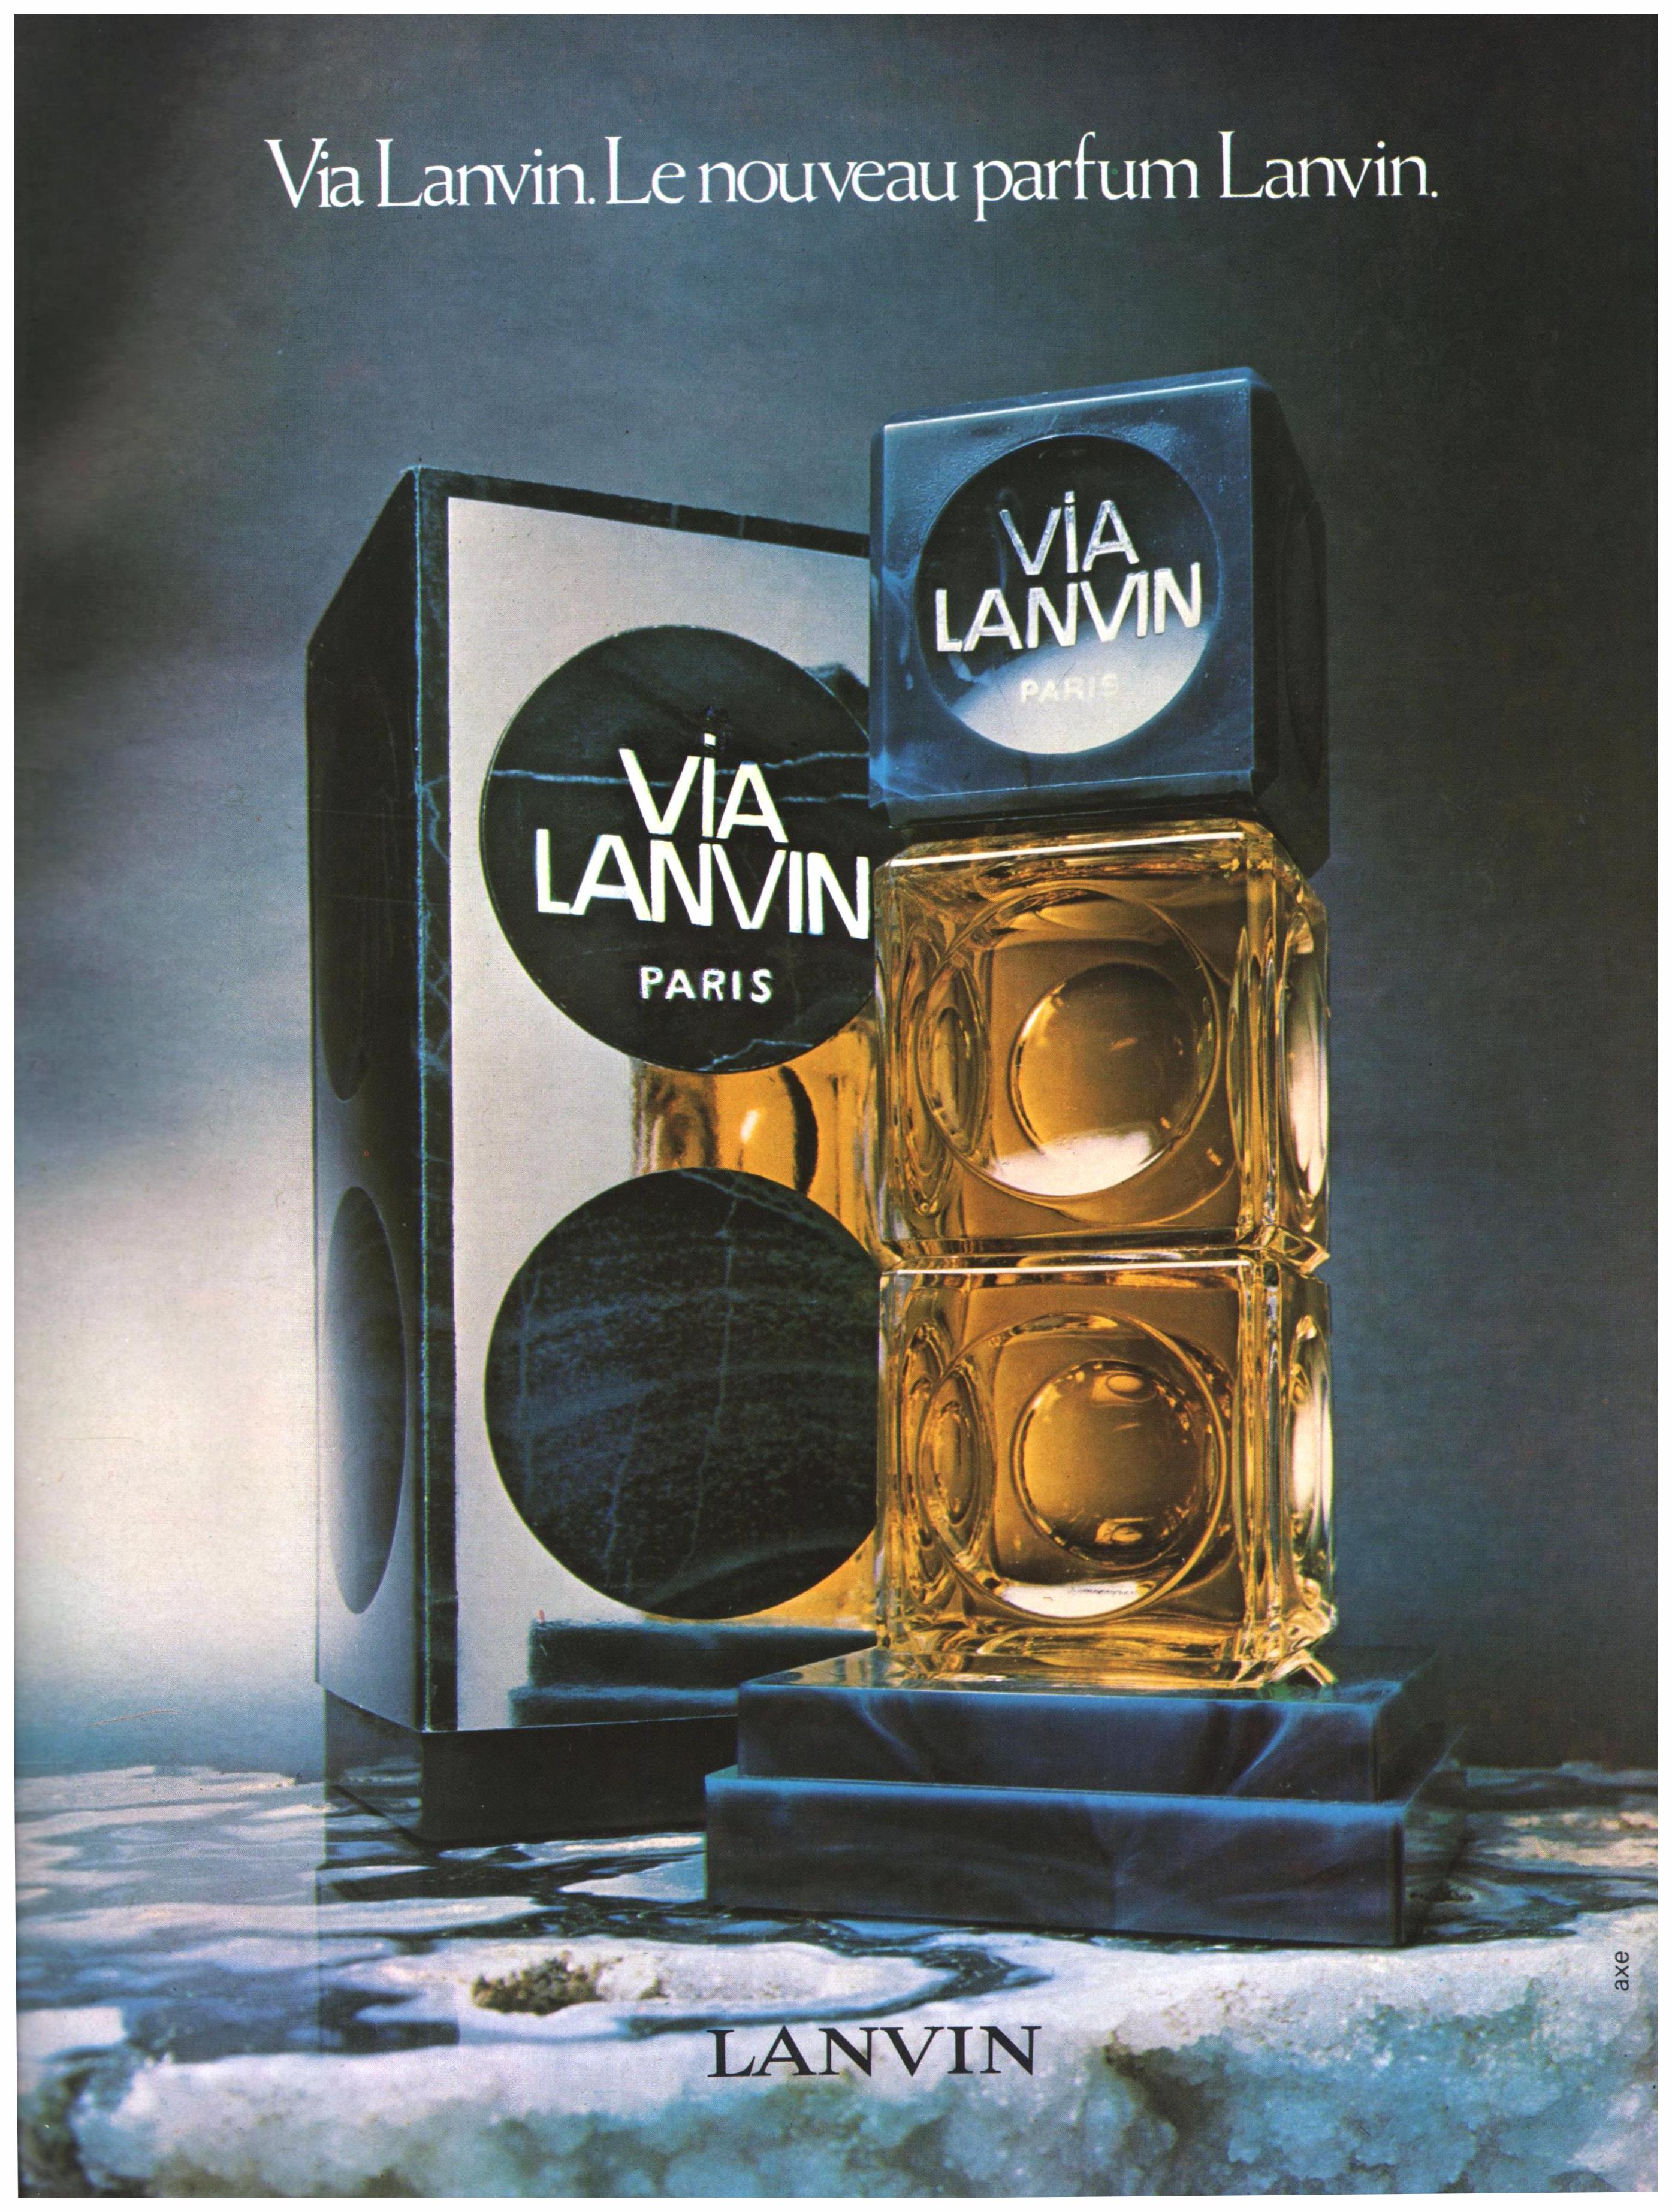 Lanvin 1973 0.jpg